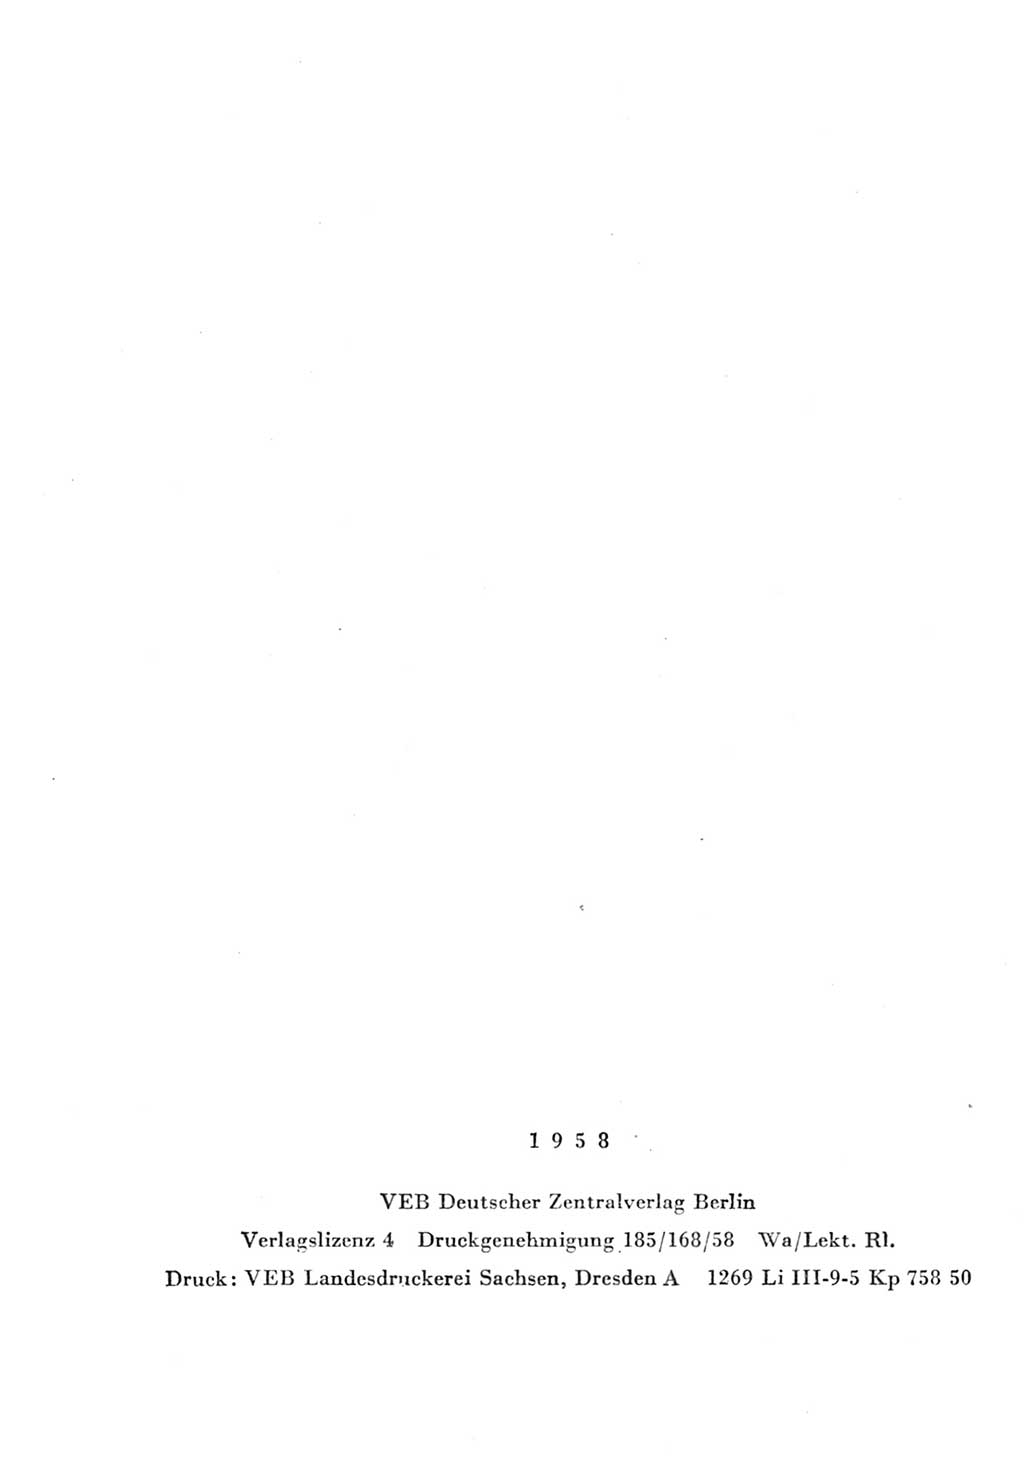 Strafgesetzbuch (StGB) und andere Strafgesetze [Deutsche Demokratische Republik (DDR)] 1957, Seite 4 (Einl. StGB Strafges. DDR 1957, S. 4)